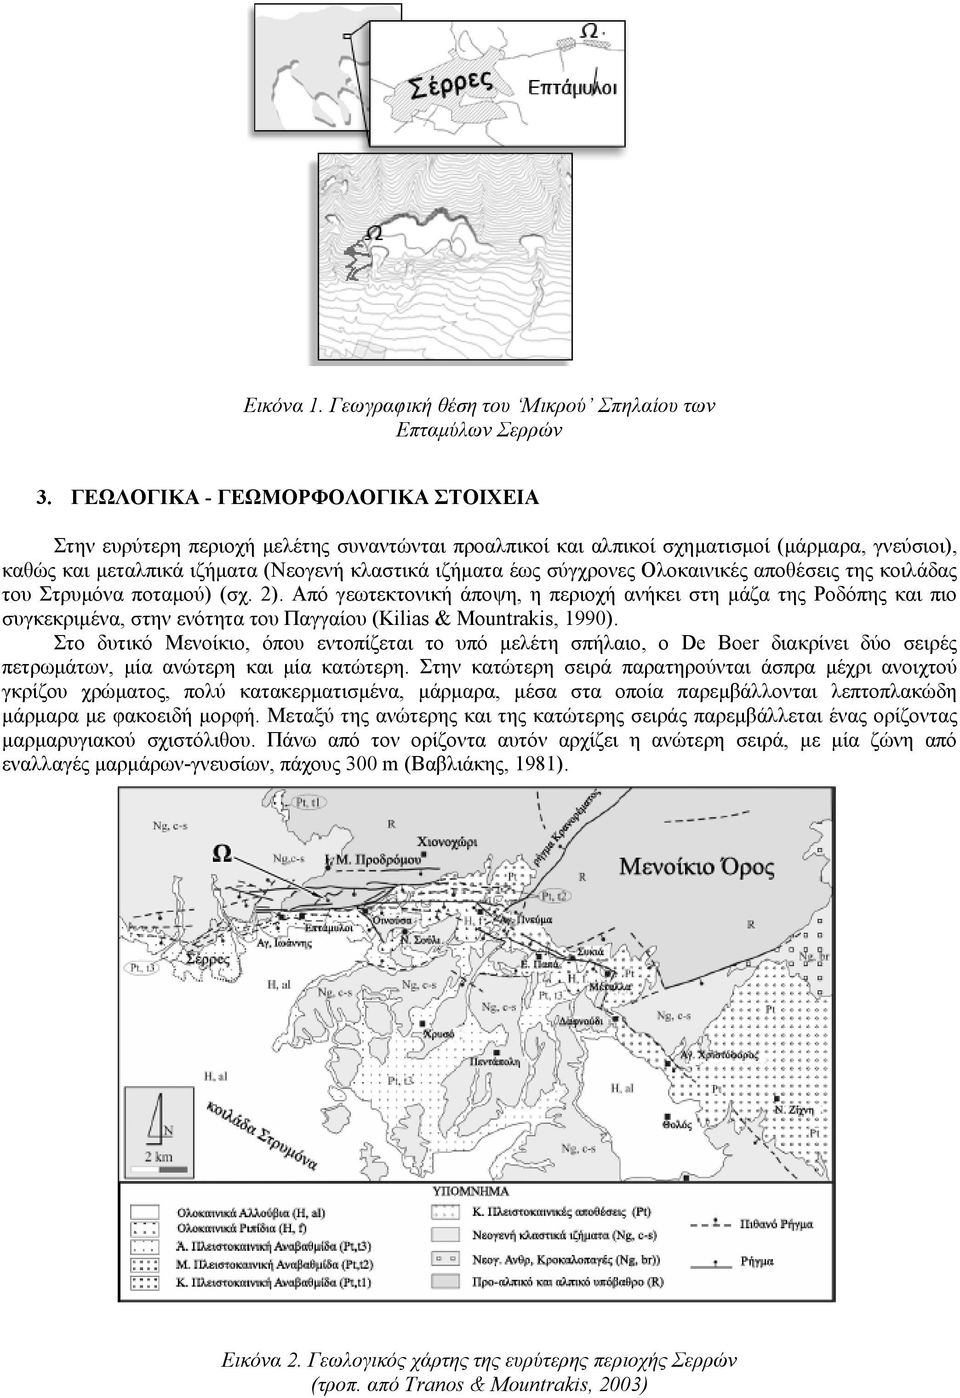 σύγχρονες Ολοκαινικές αποθέσεις της κοιλάδας του Στρυμόνα ποταμού) (σχ. 2).